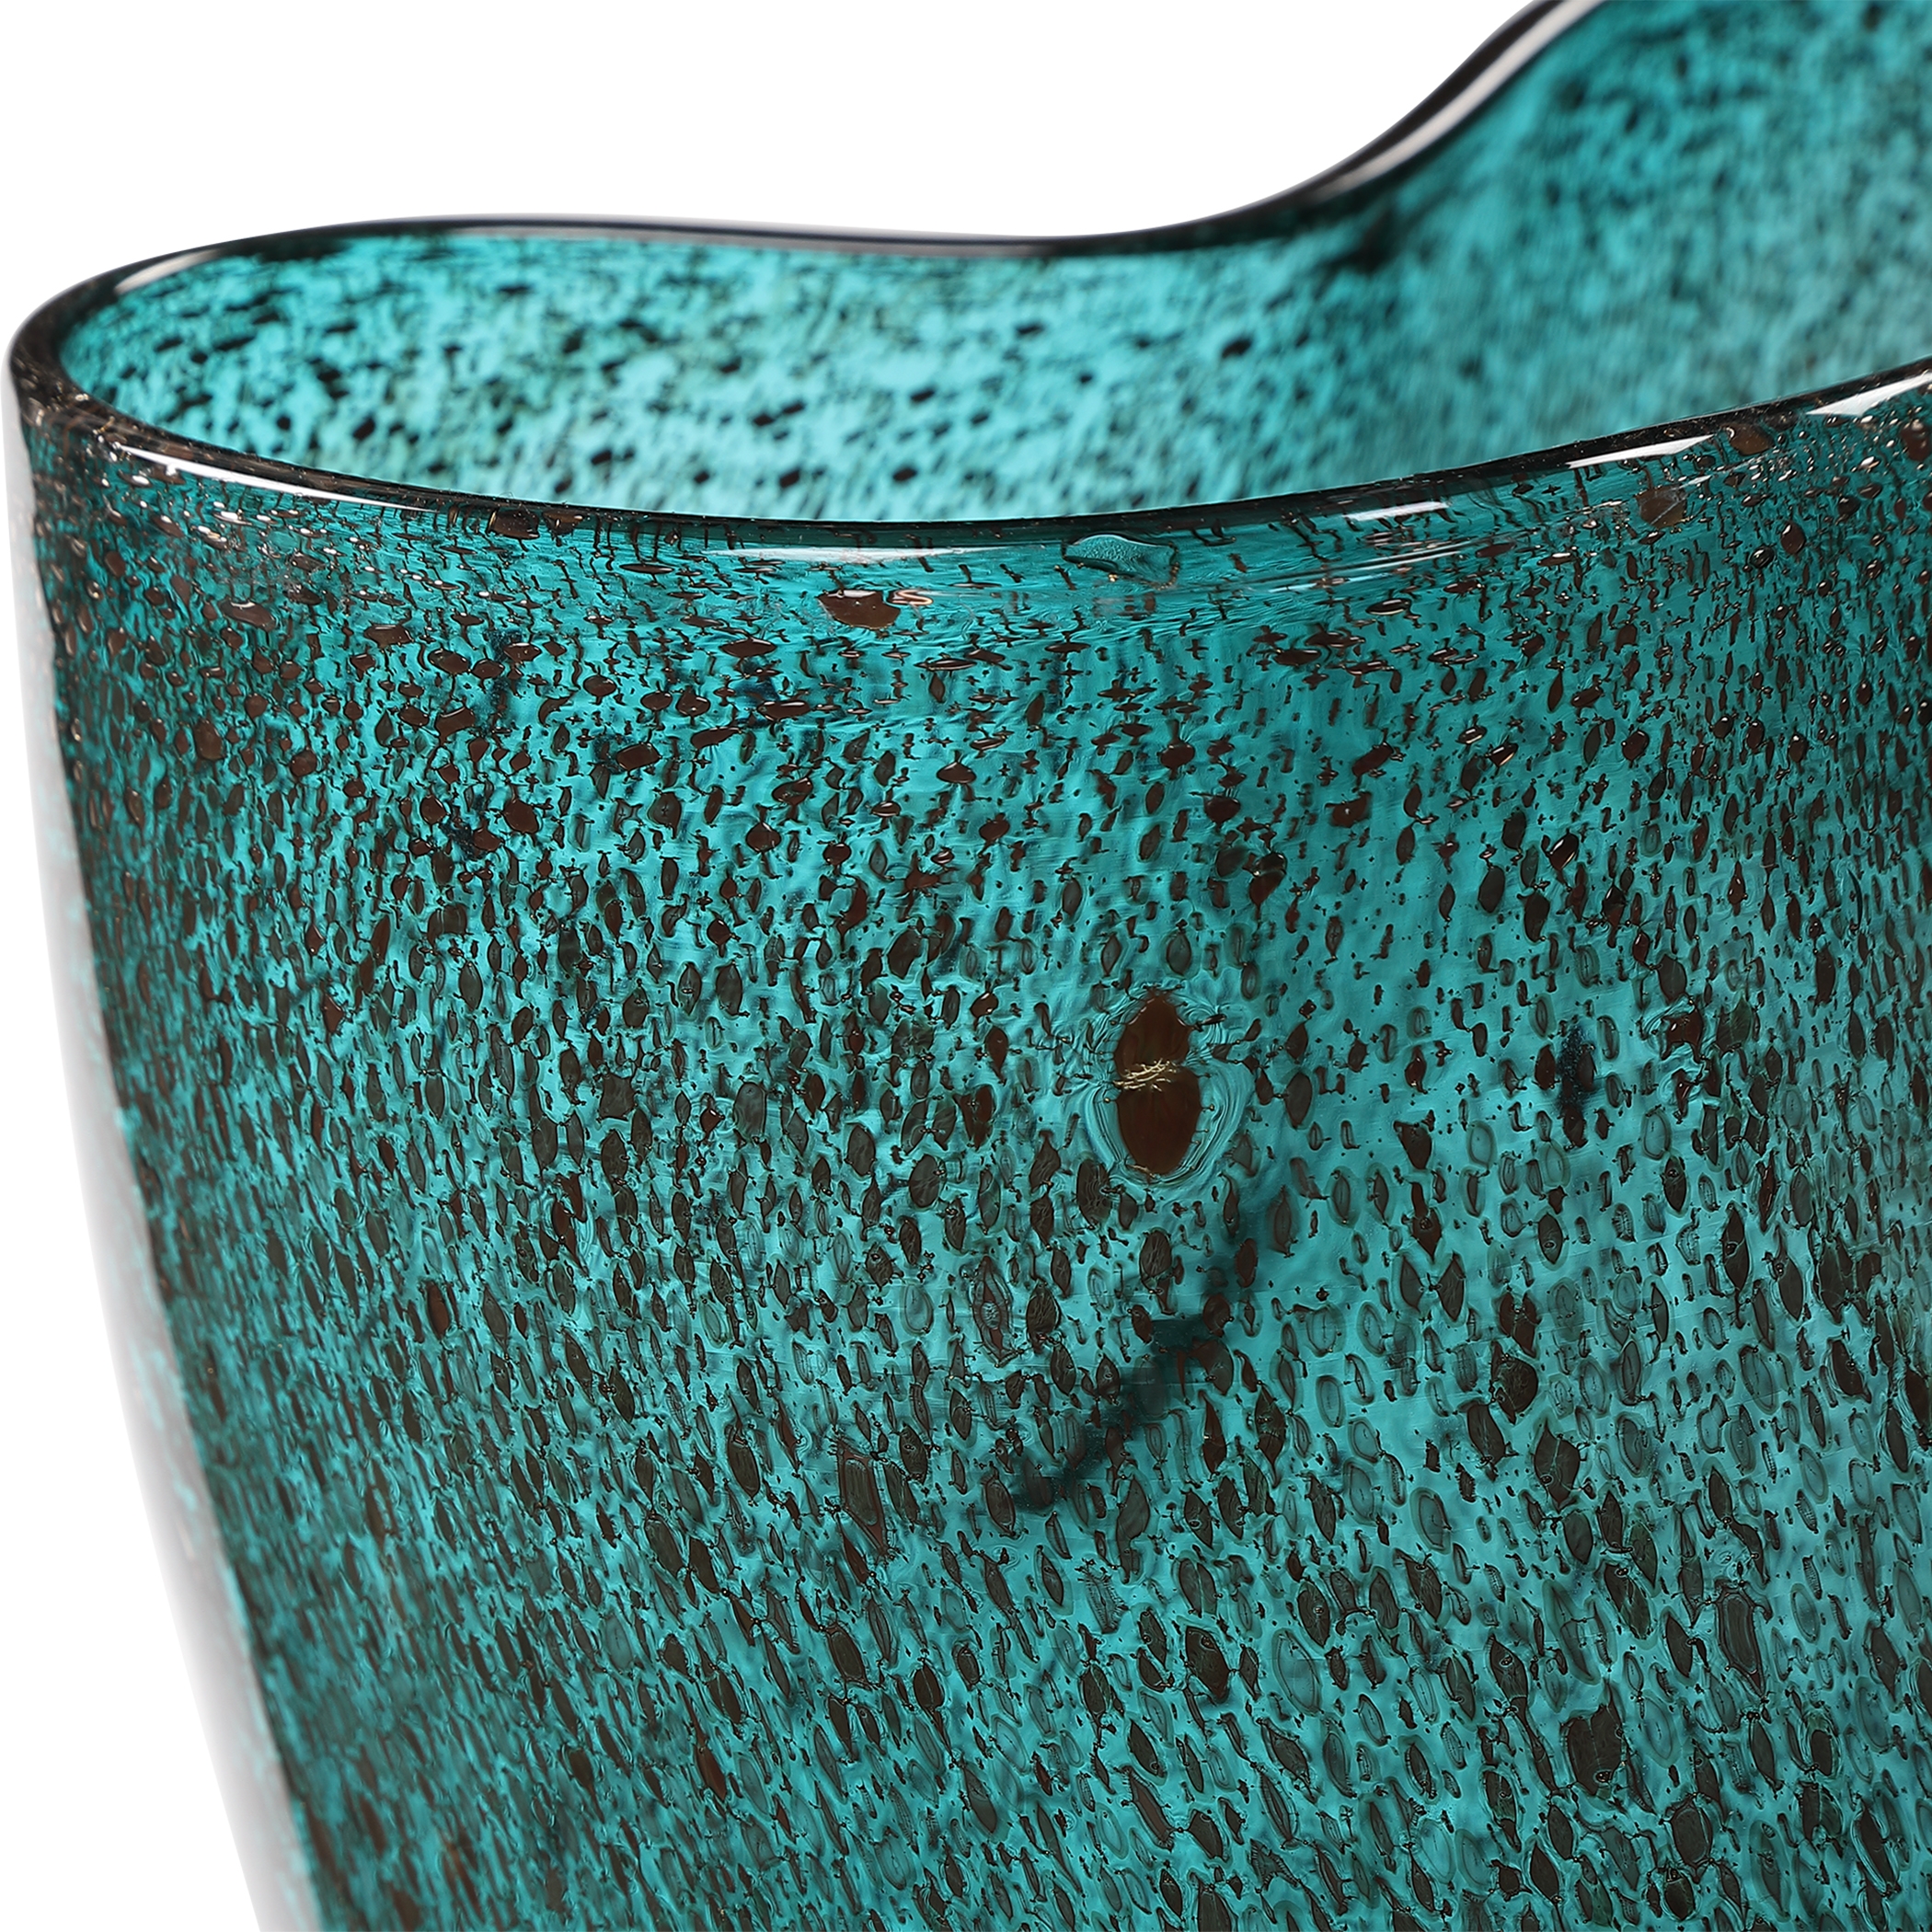 Lulu Aqua Glass Vases, S/2 - Image 2